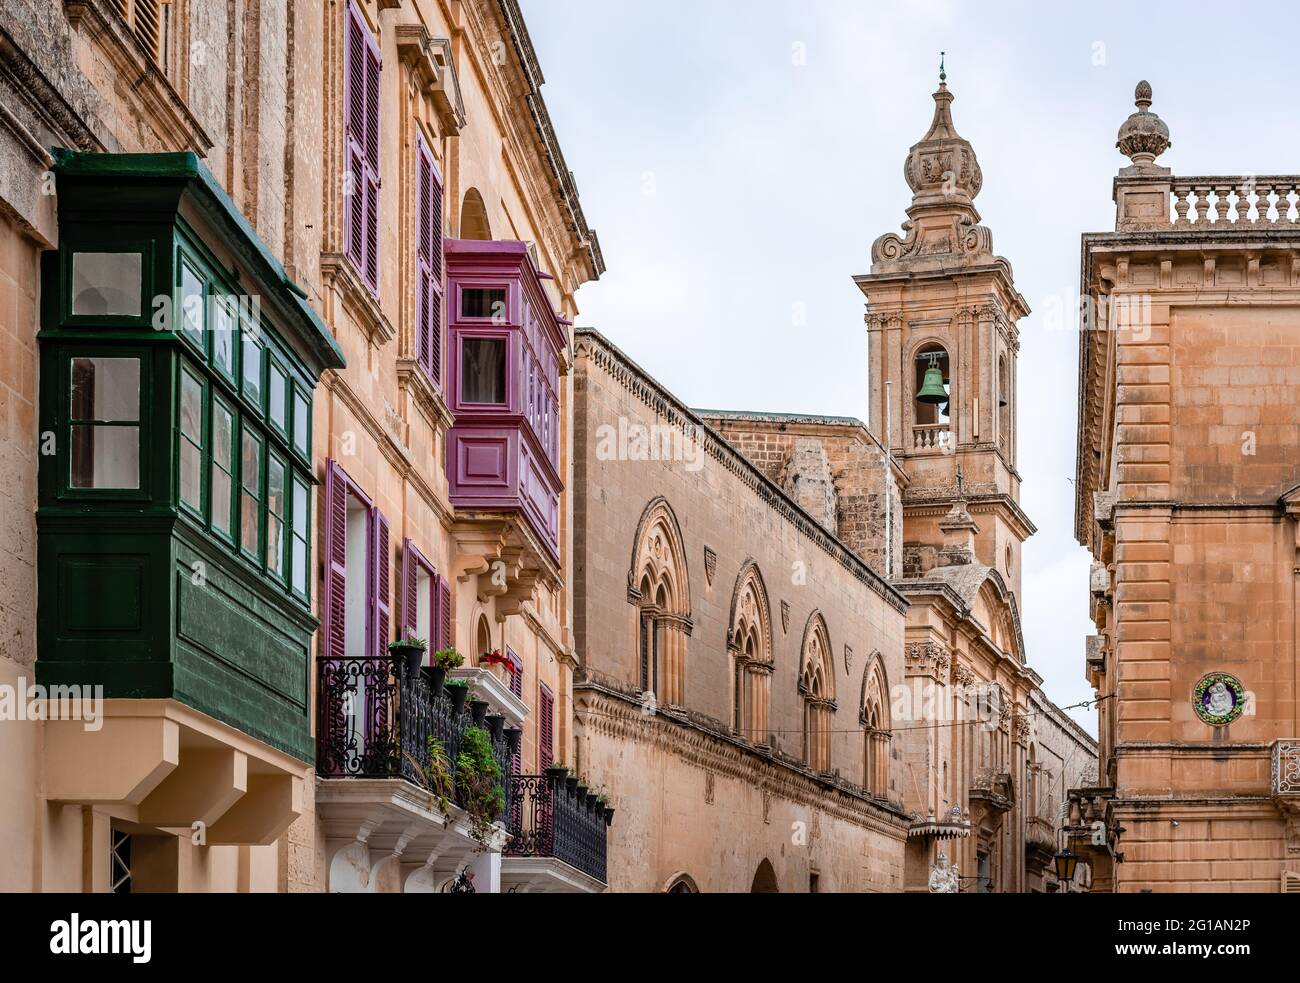 Palazzo Santa Sofia et d'autres bâtiments médiévaux dans la rue Villegaignon, autour de la place Saint-Paul, à Mdina, Malte. Architecture maltaise typique. Banque D'Images